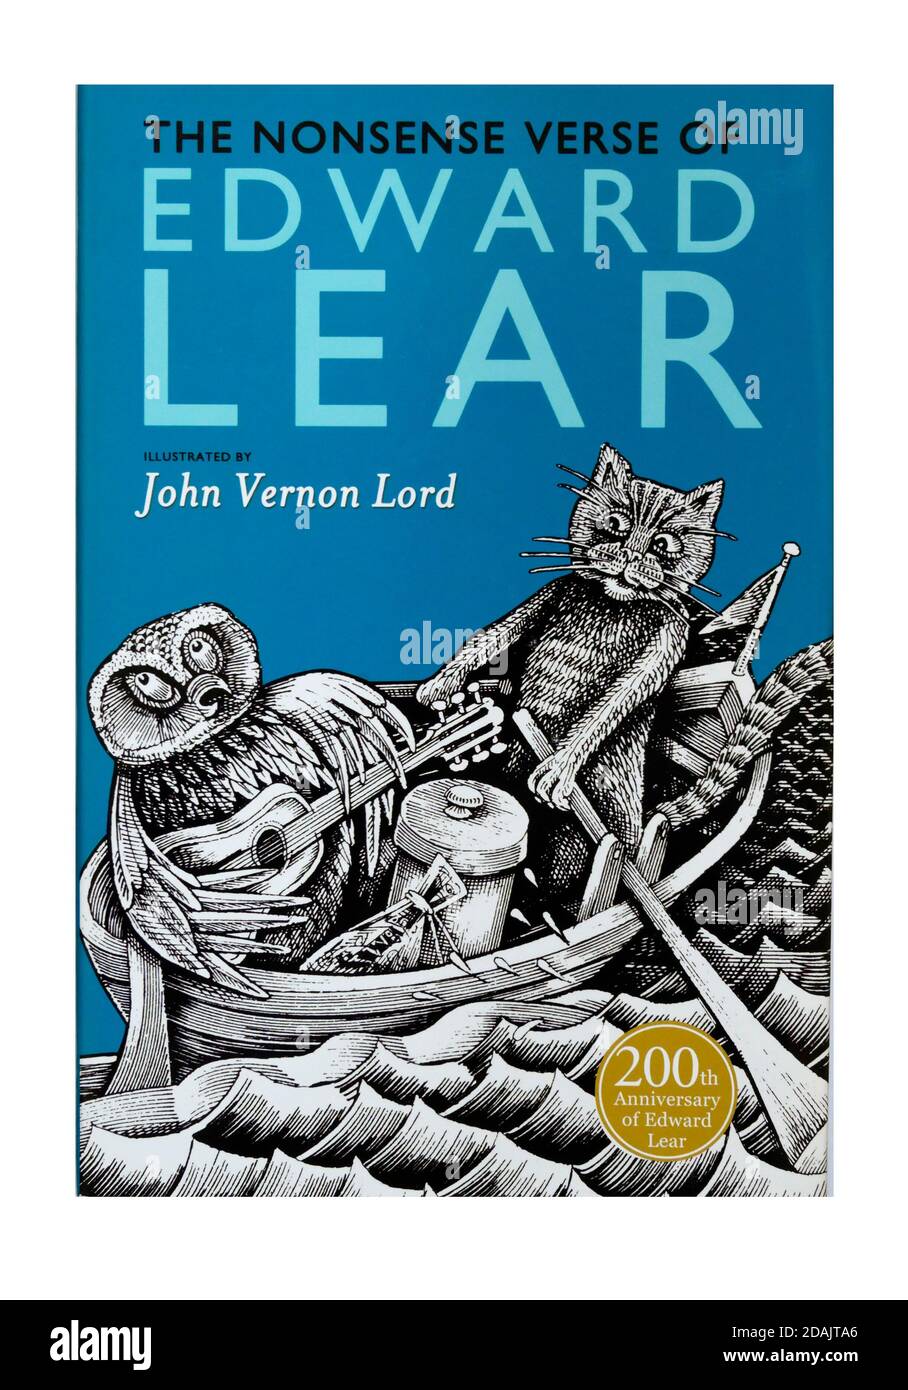 Copertina del libro 'il versetto assurdo di Edward Lear', illustrato da John Vernon Lord. 200° anniversario di Edward Lear. Foto Stock